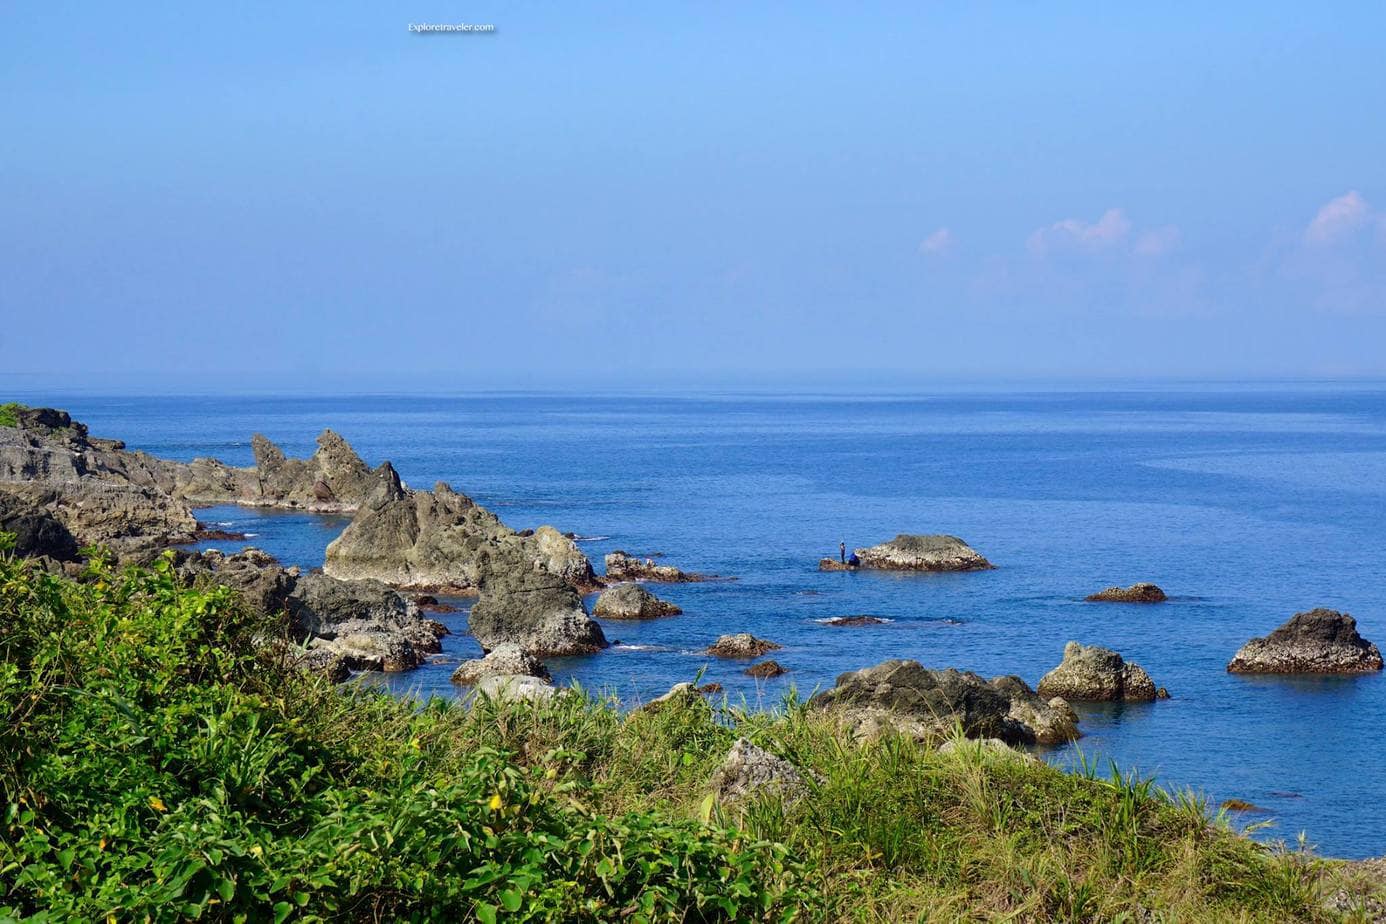 Terumbu karang terjal dan batuan vulkanik di sepanjang pantai Taitung County Taiwan